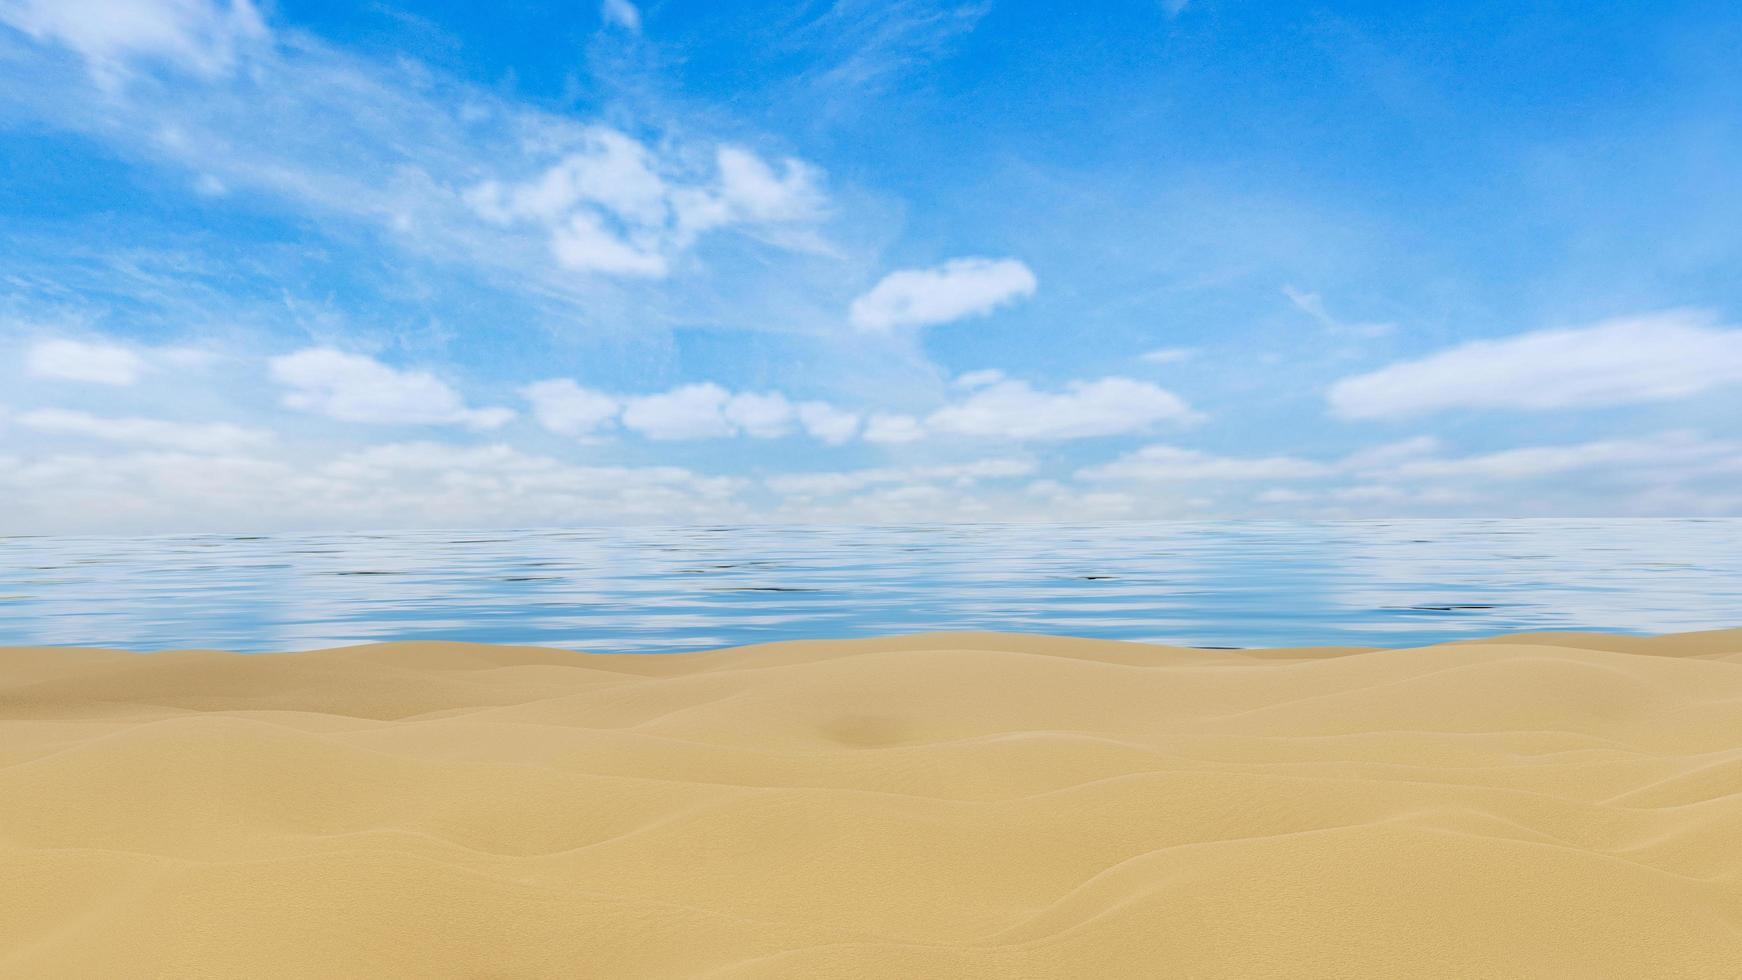 areia na praia do mar. céu azul brilhante e o mar tem pequenas ondas. cenário à beira-mar durante o dia. renderização em 3D foto